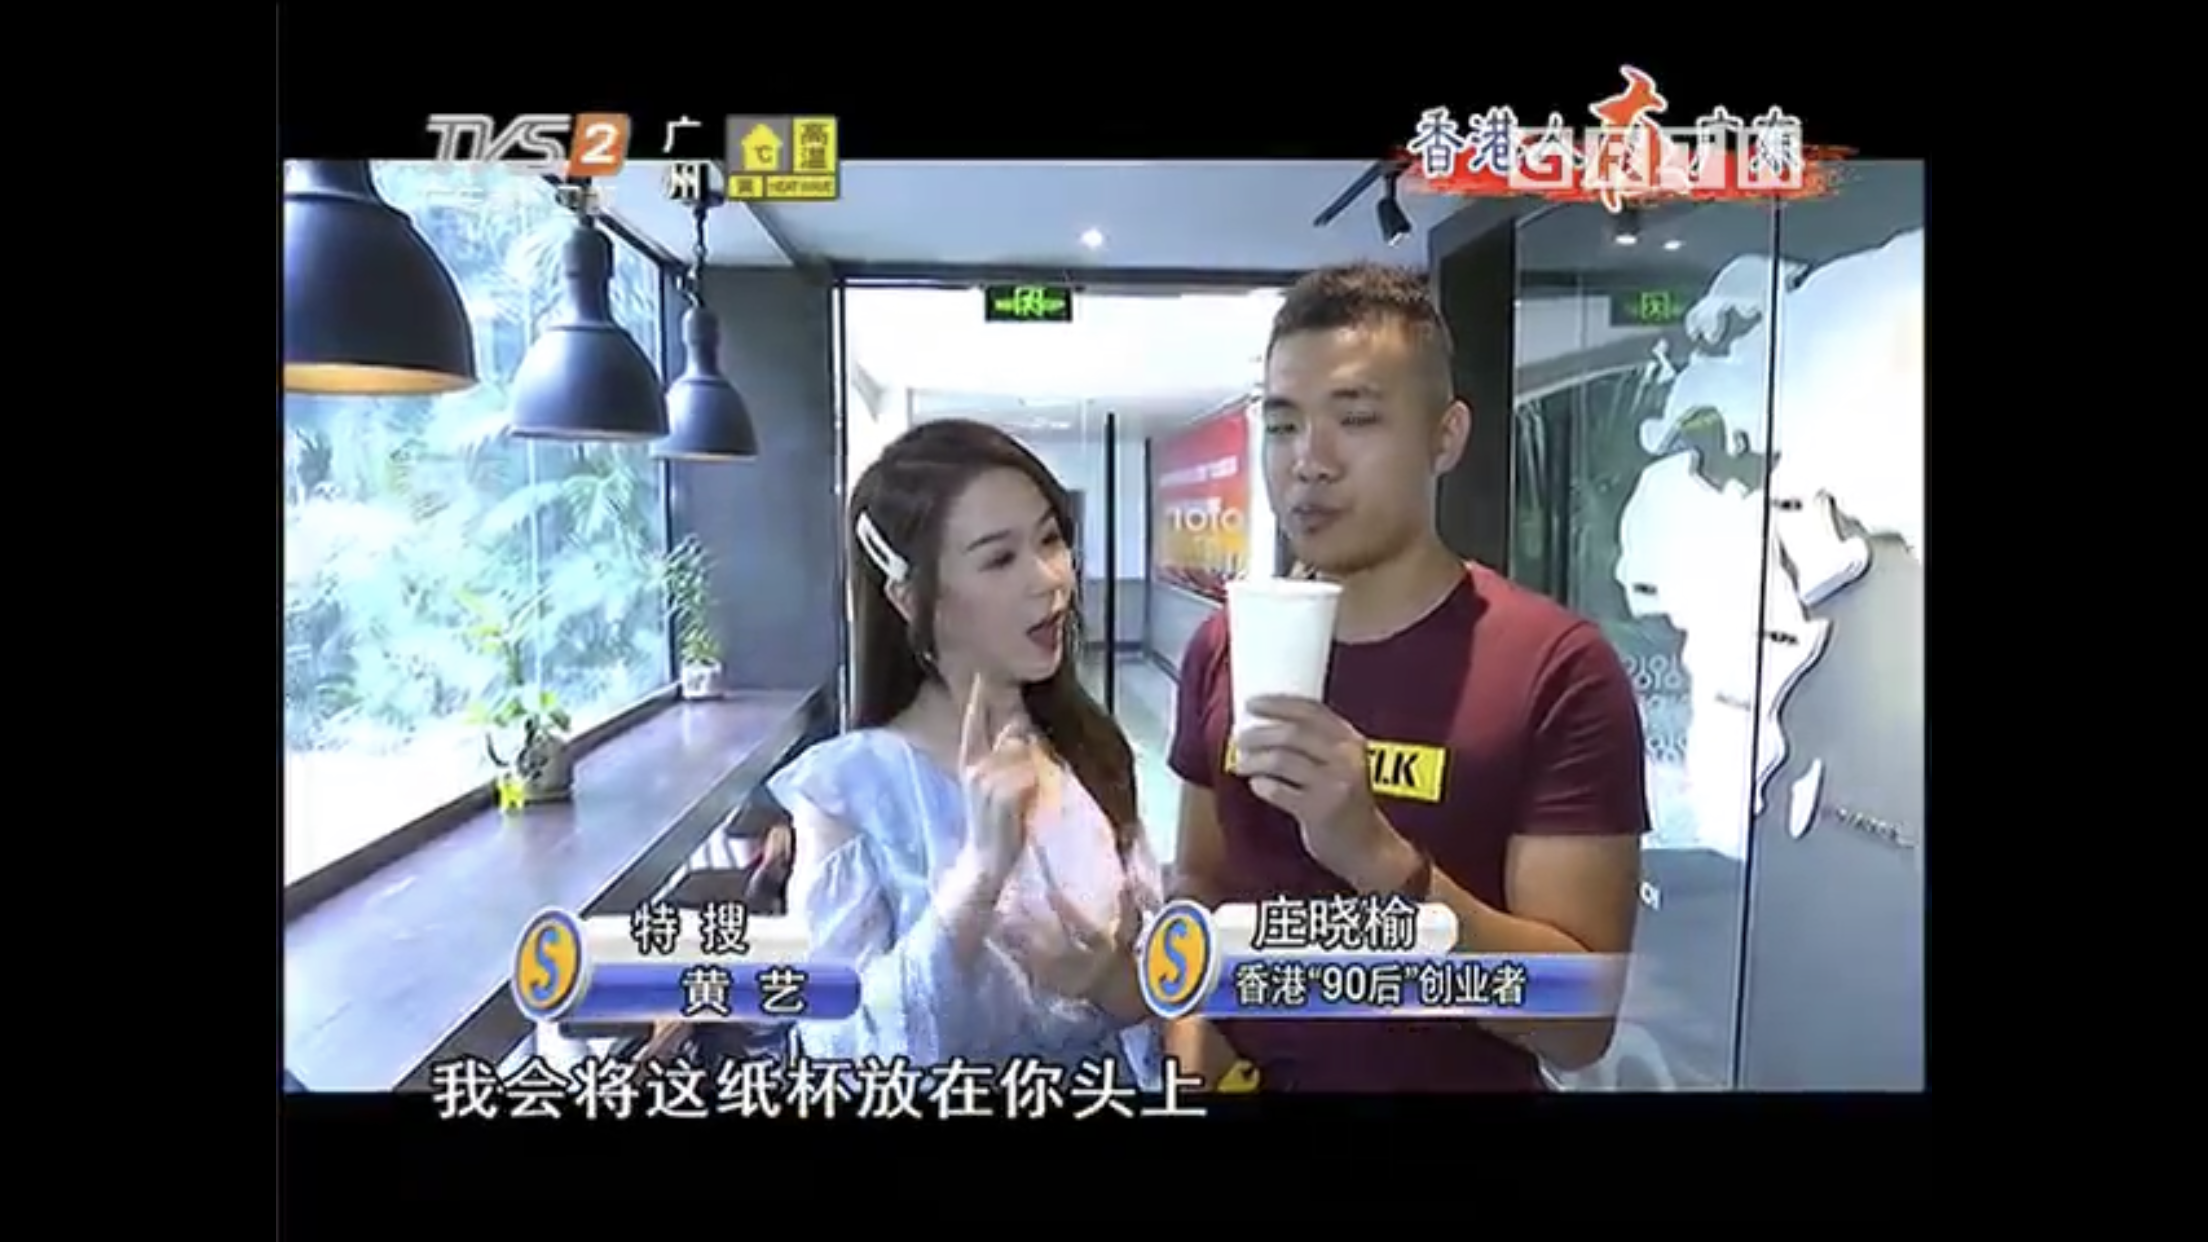 演藝人媒體報導莊曉榆: 《廣東電視台》雙節棍採訪嘉賓